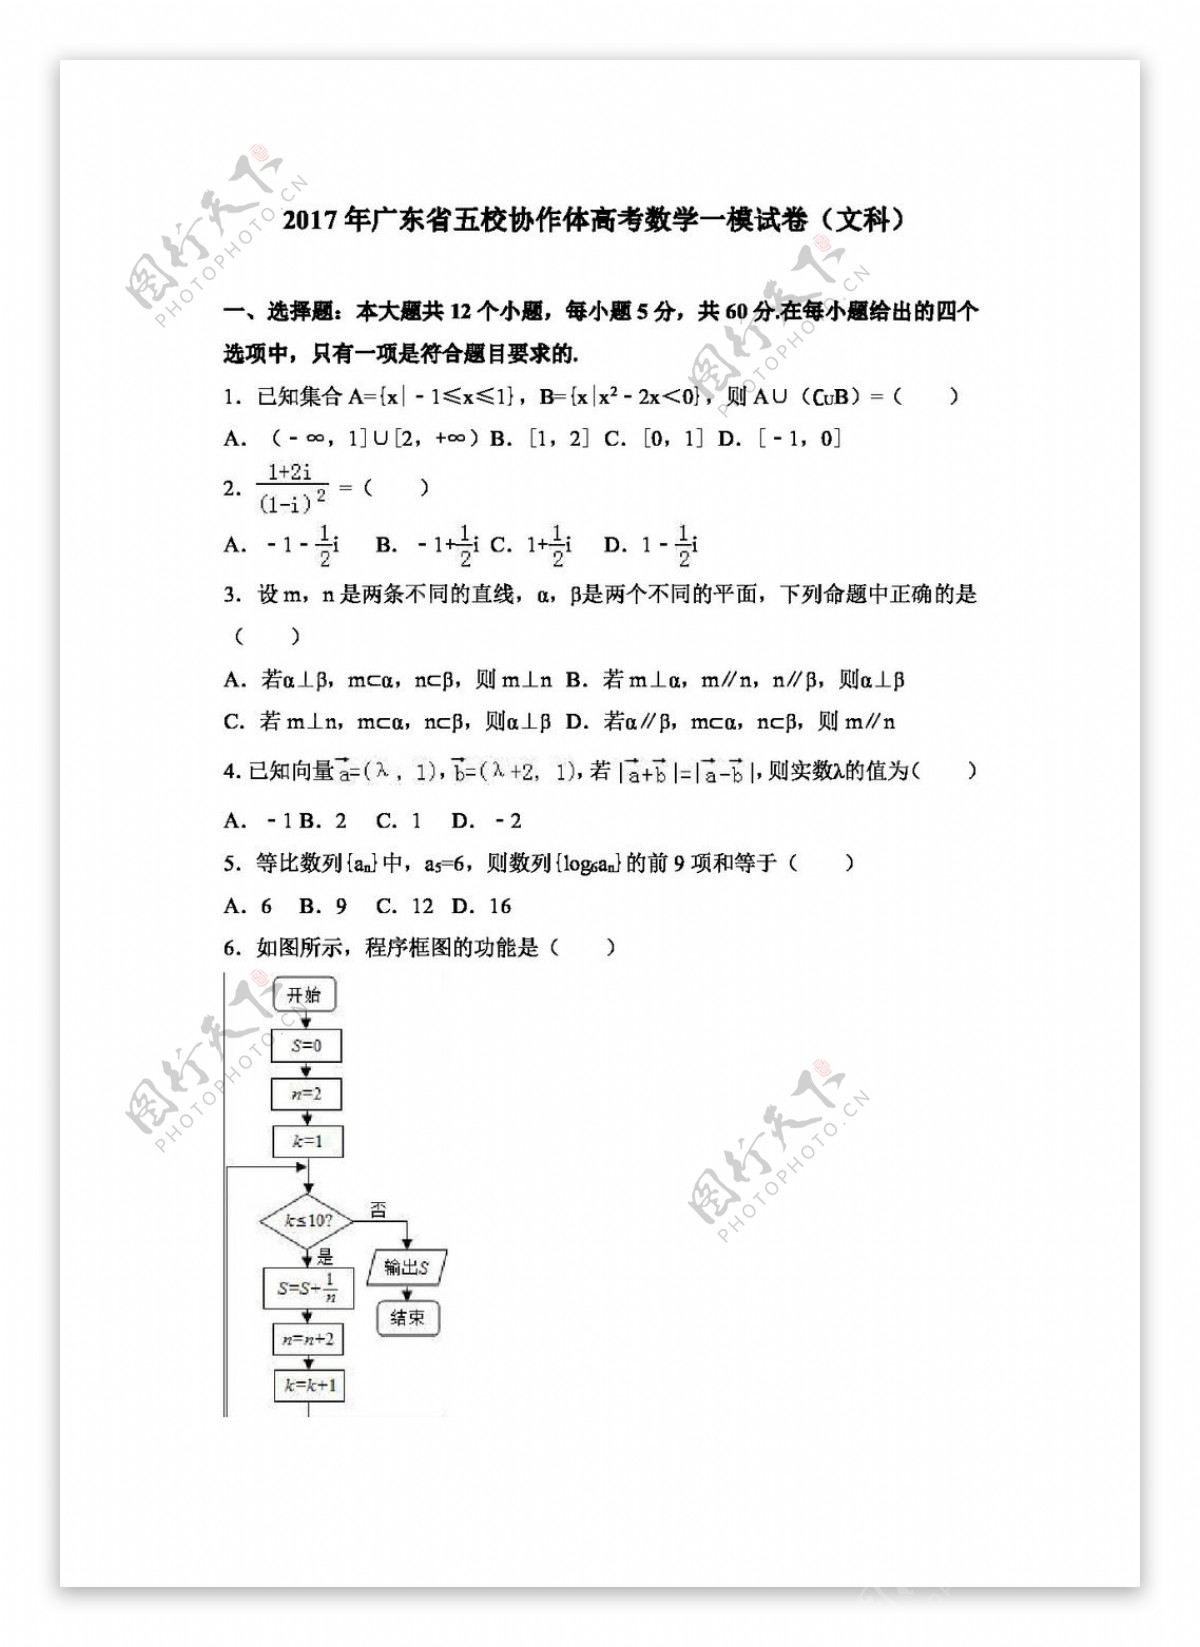 数学人教版2017年广东省五校协作体高考数学一模试卷文科